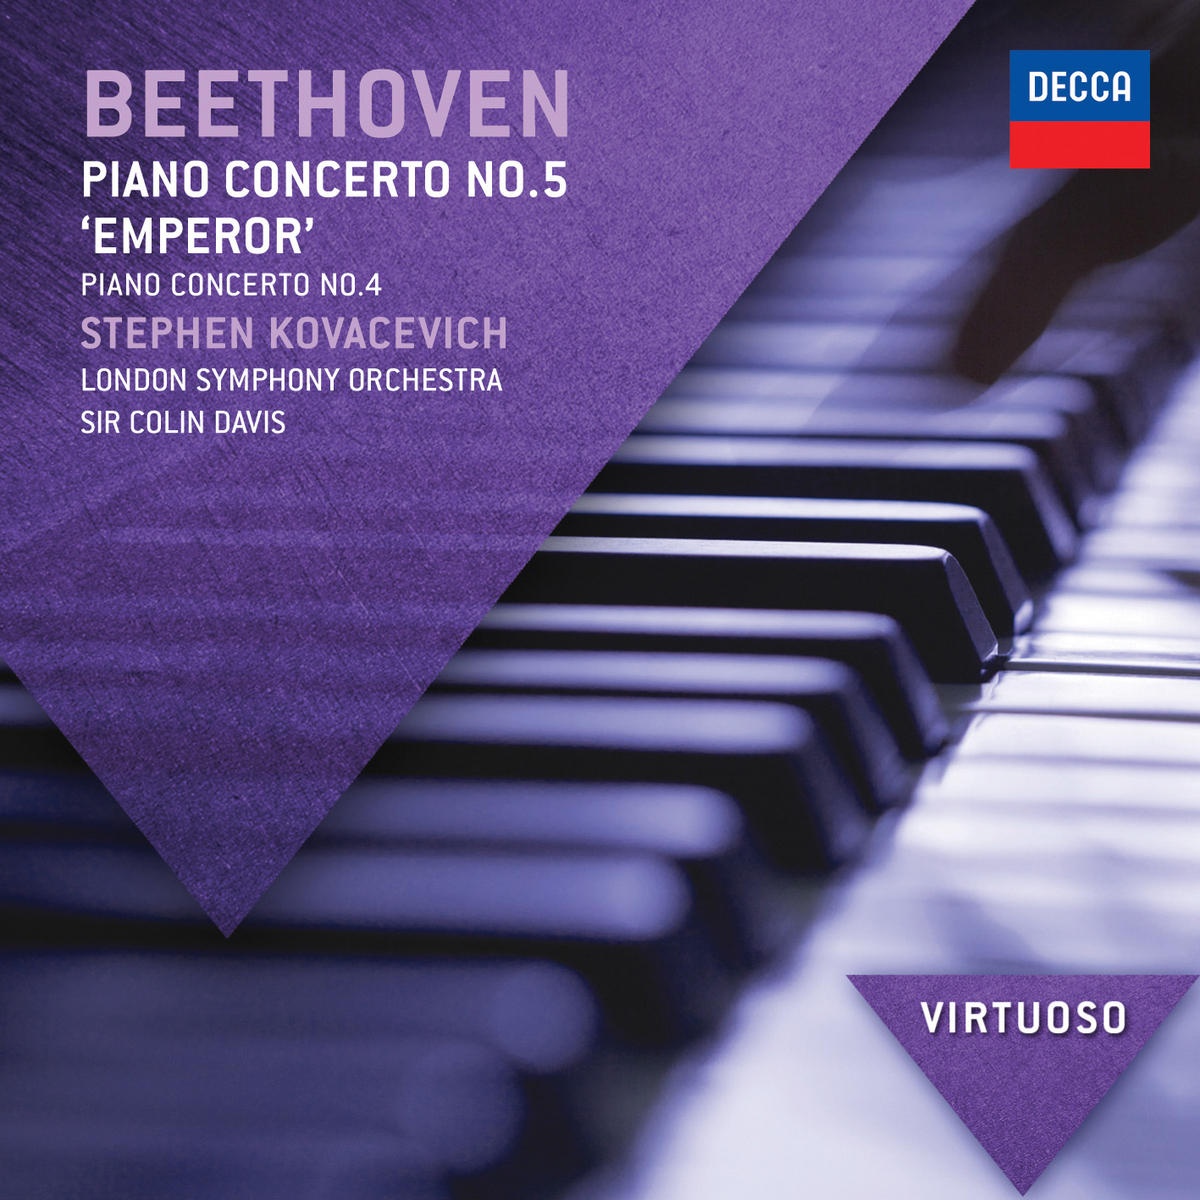 Beethoven: Piano Concerto No.4 in G, Op.58 - 3. Rondo (Vivace)